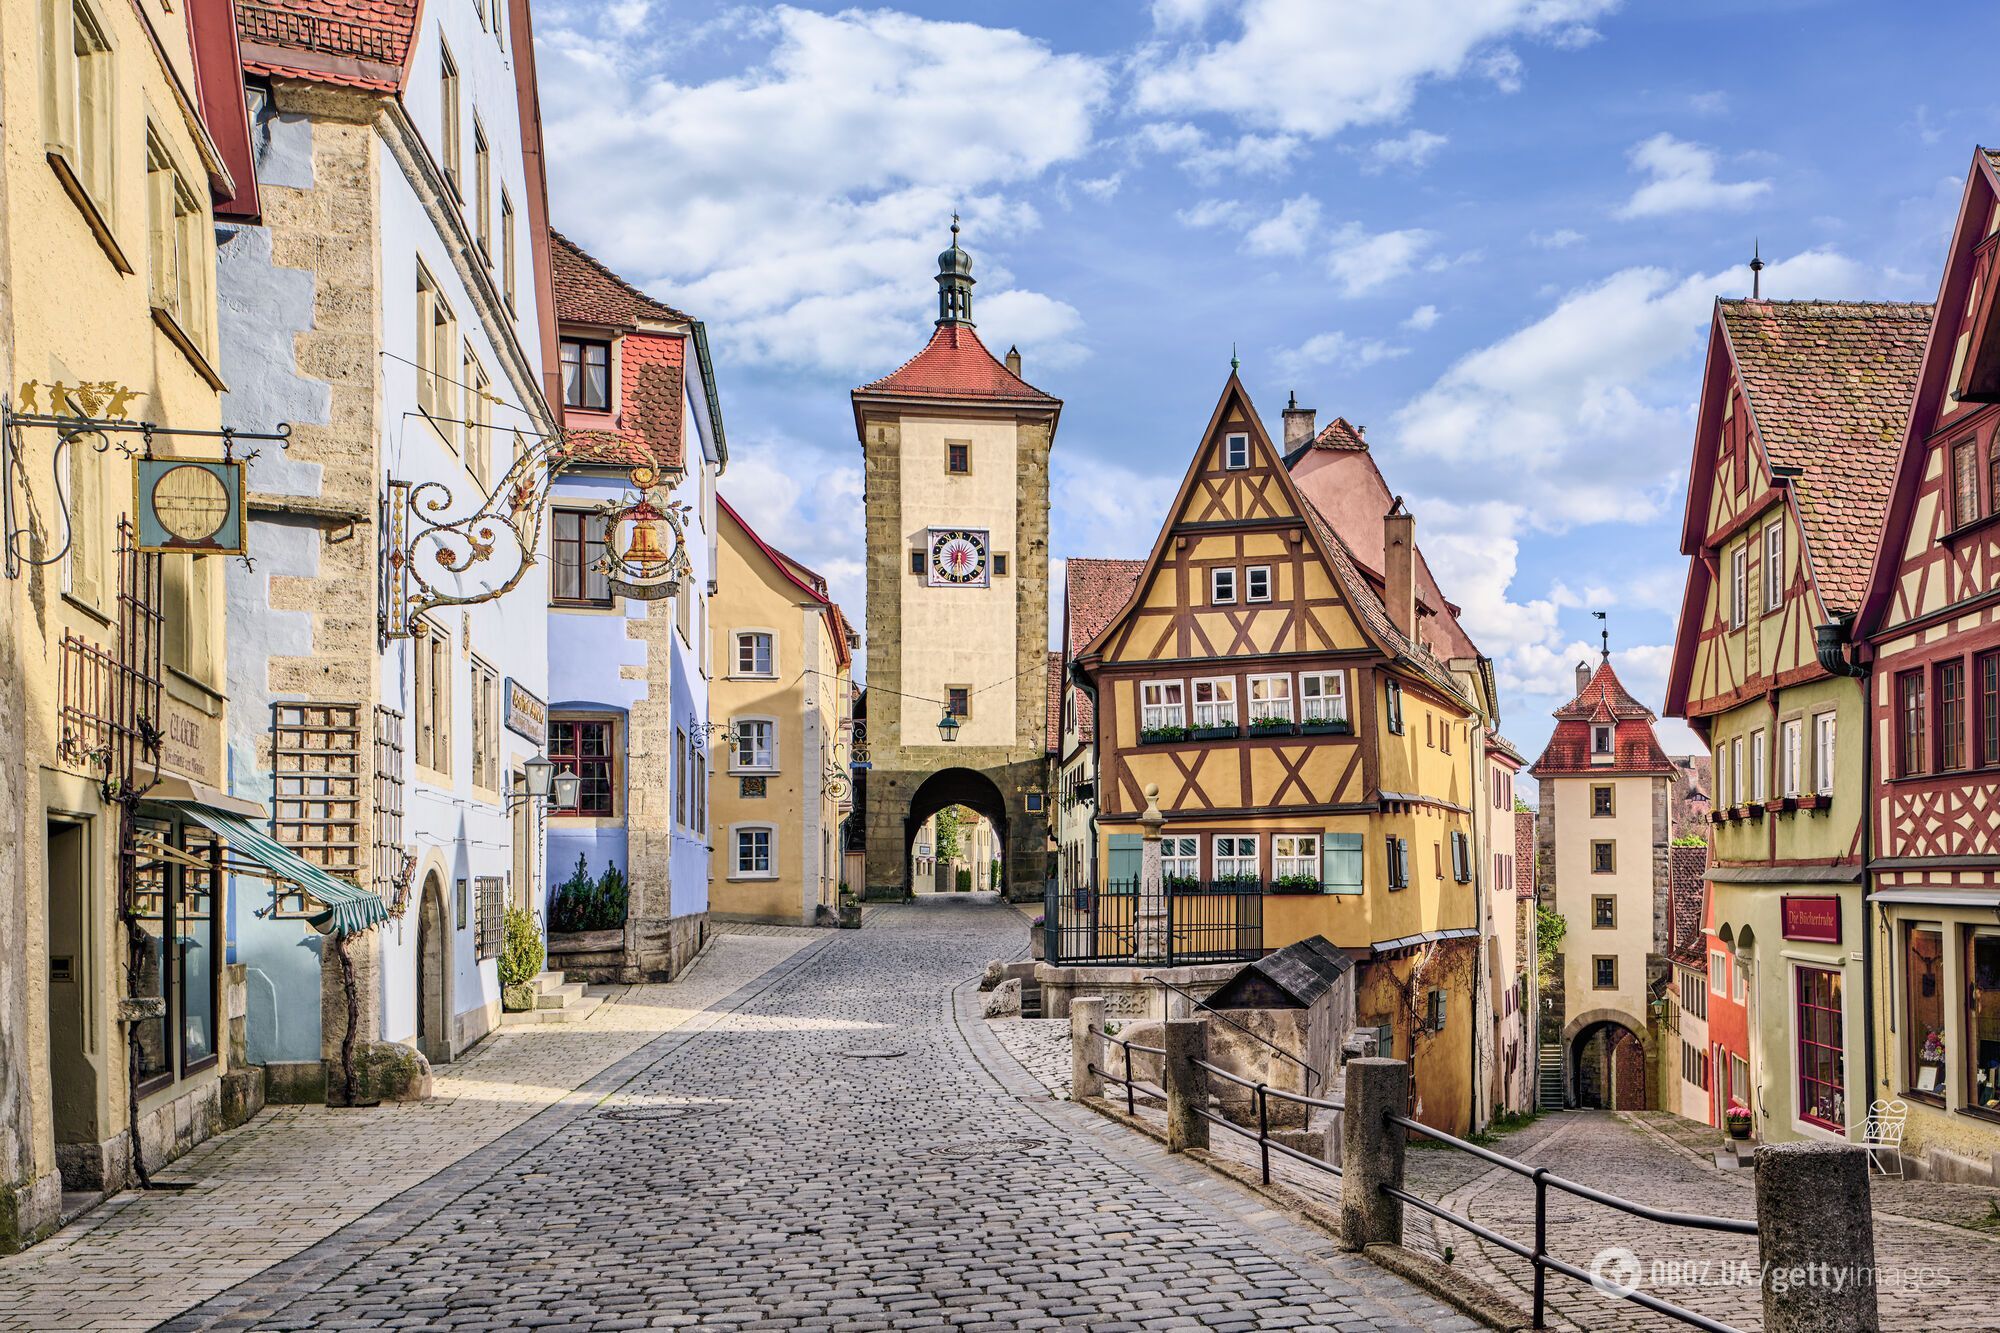 "Живая сказка": как выглядит крошечный город в Европе, вдохновивший классиков Disney. Фото